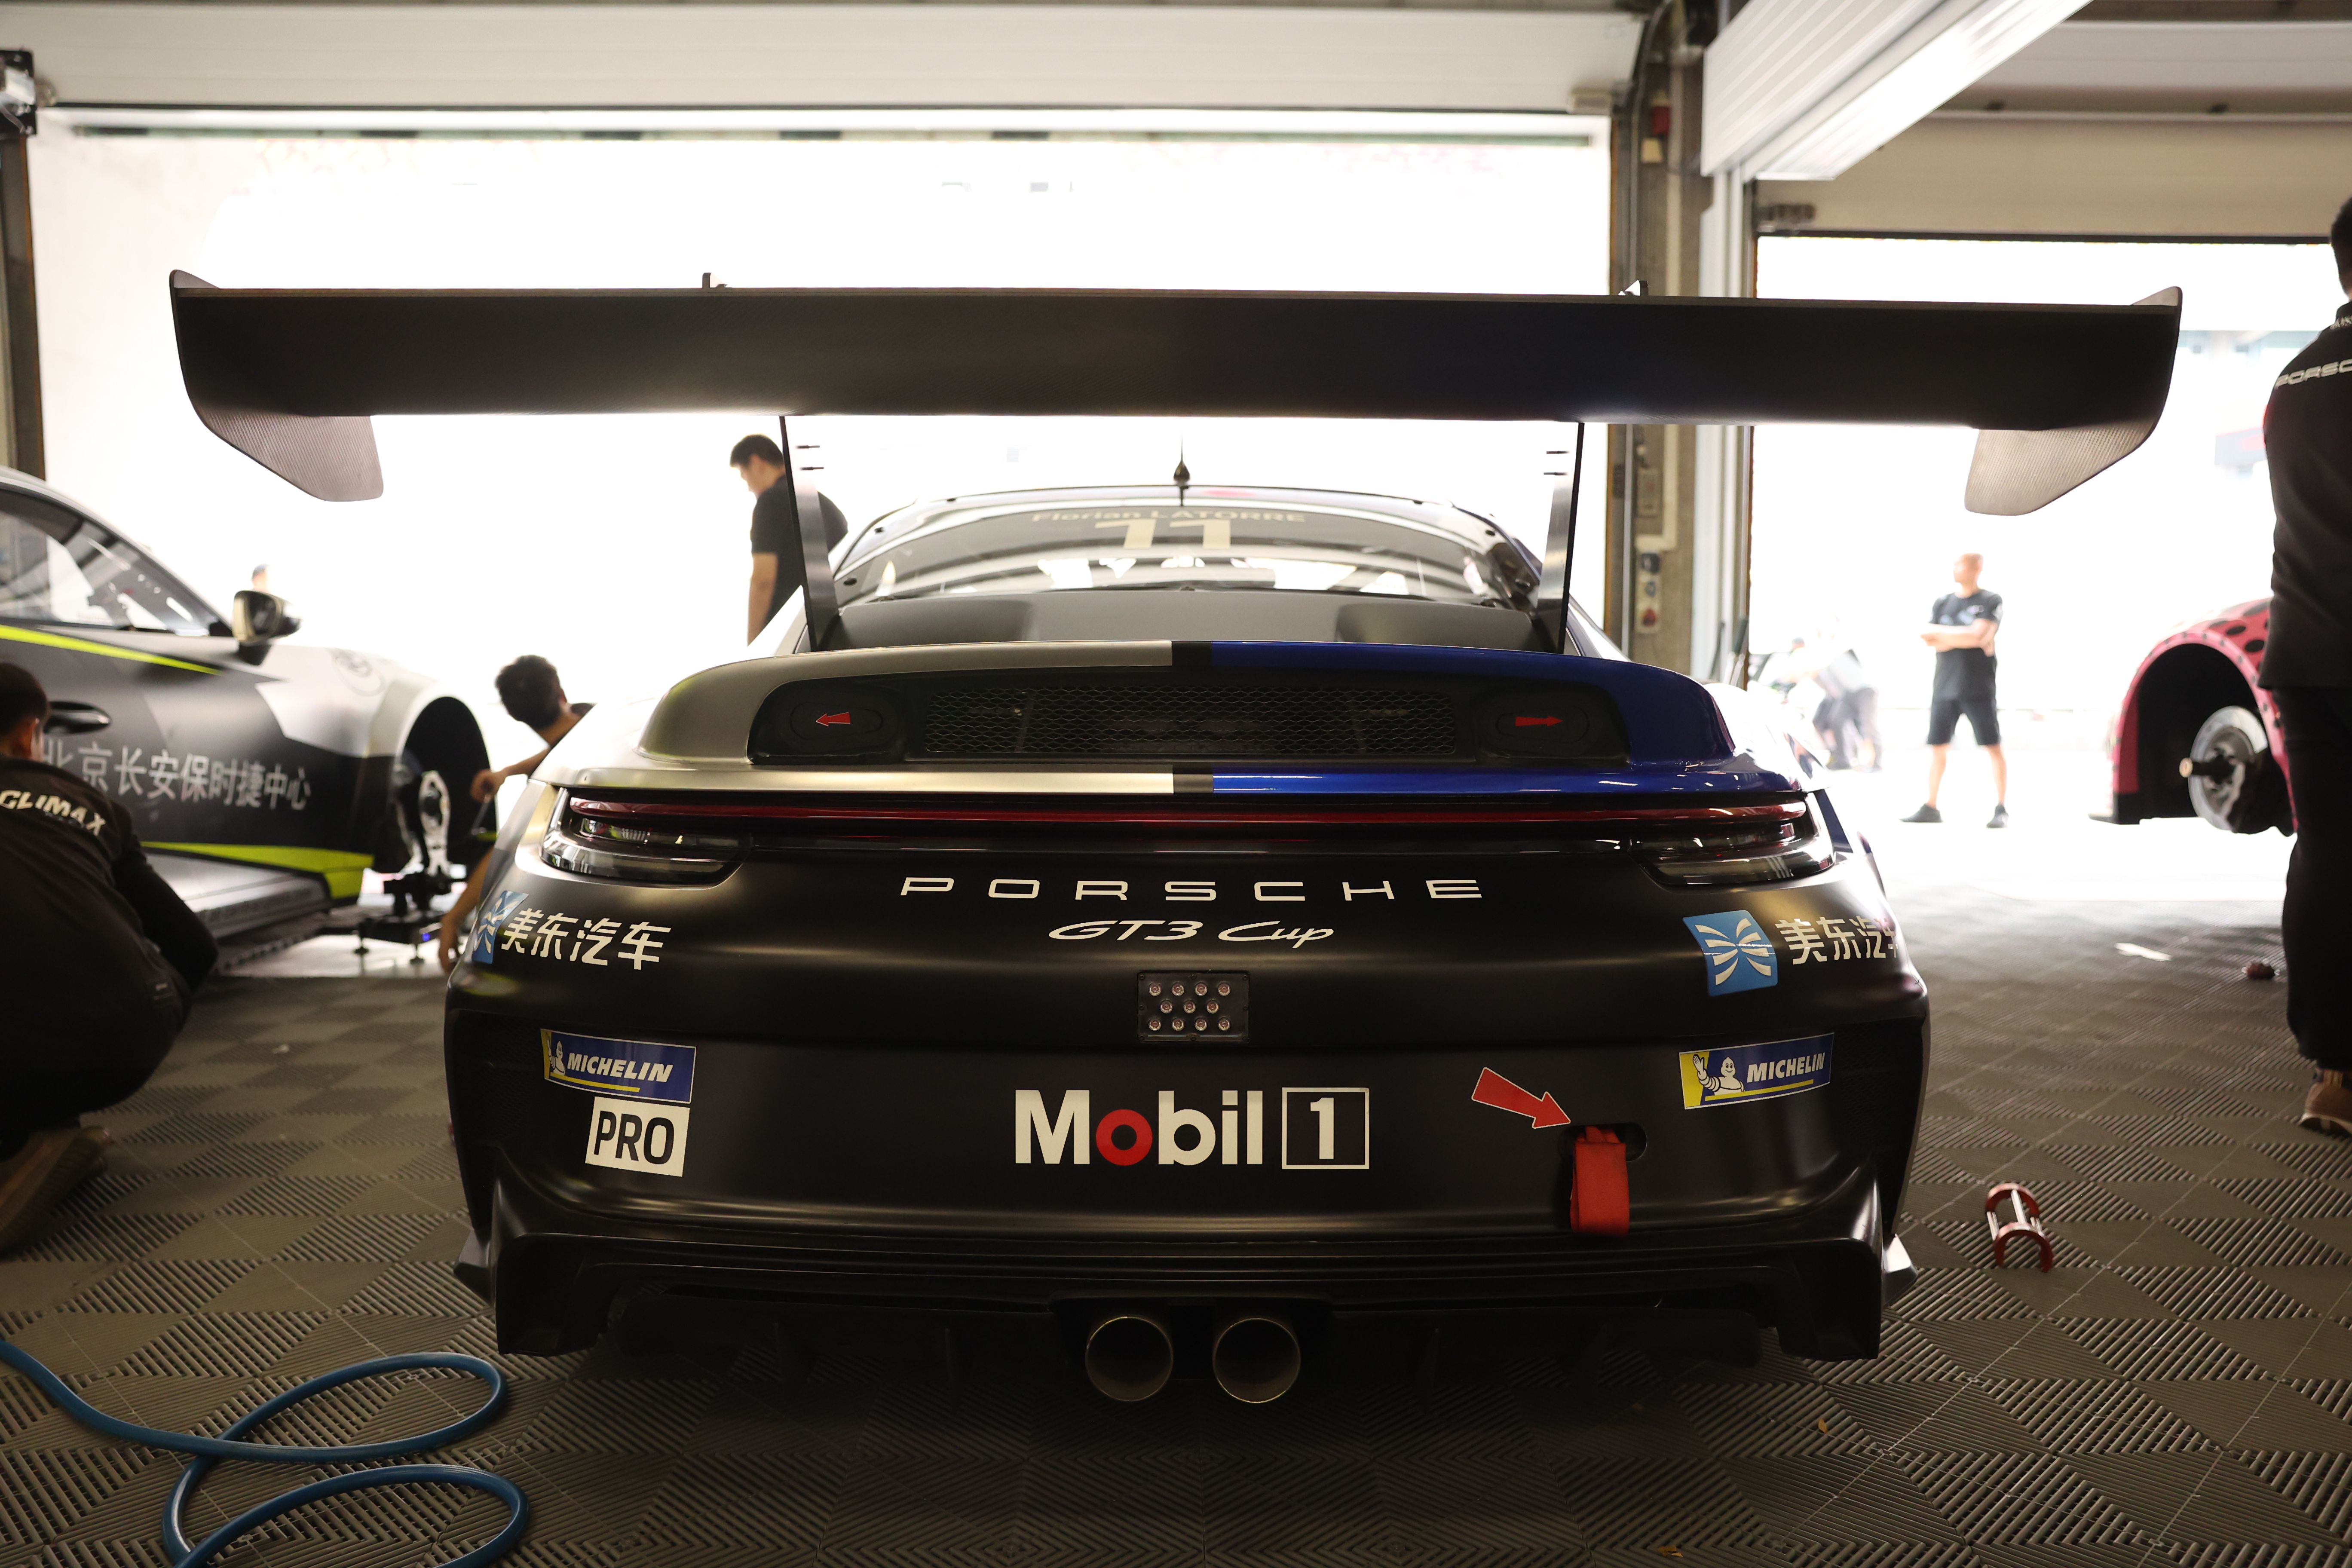 2023 ポルシェ 911 GT3 CUP (タイプ 992) - 25.5 時間、2023 PCCA チャンピオンカー